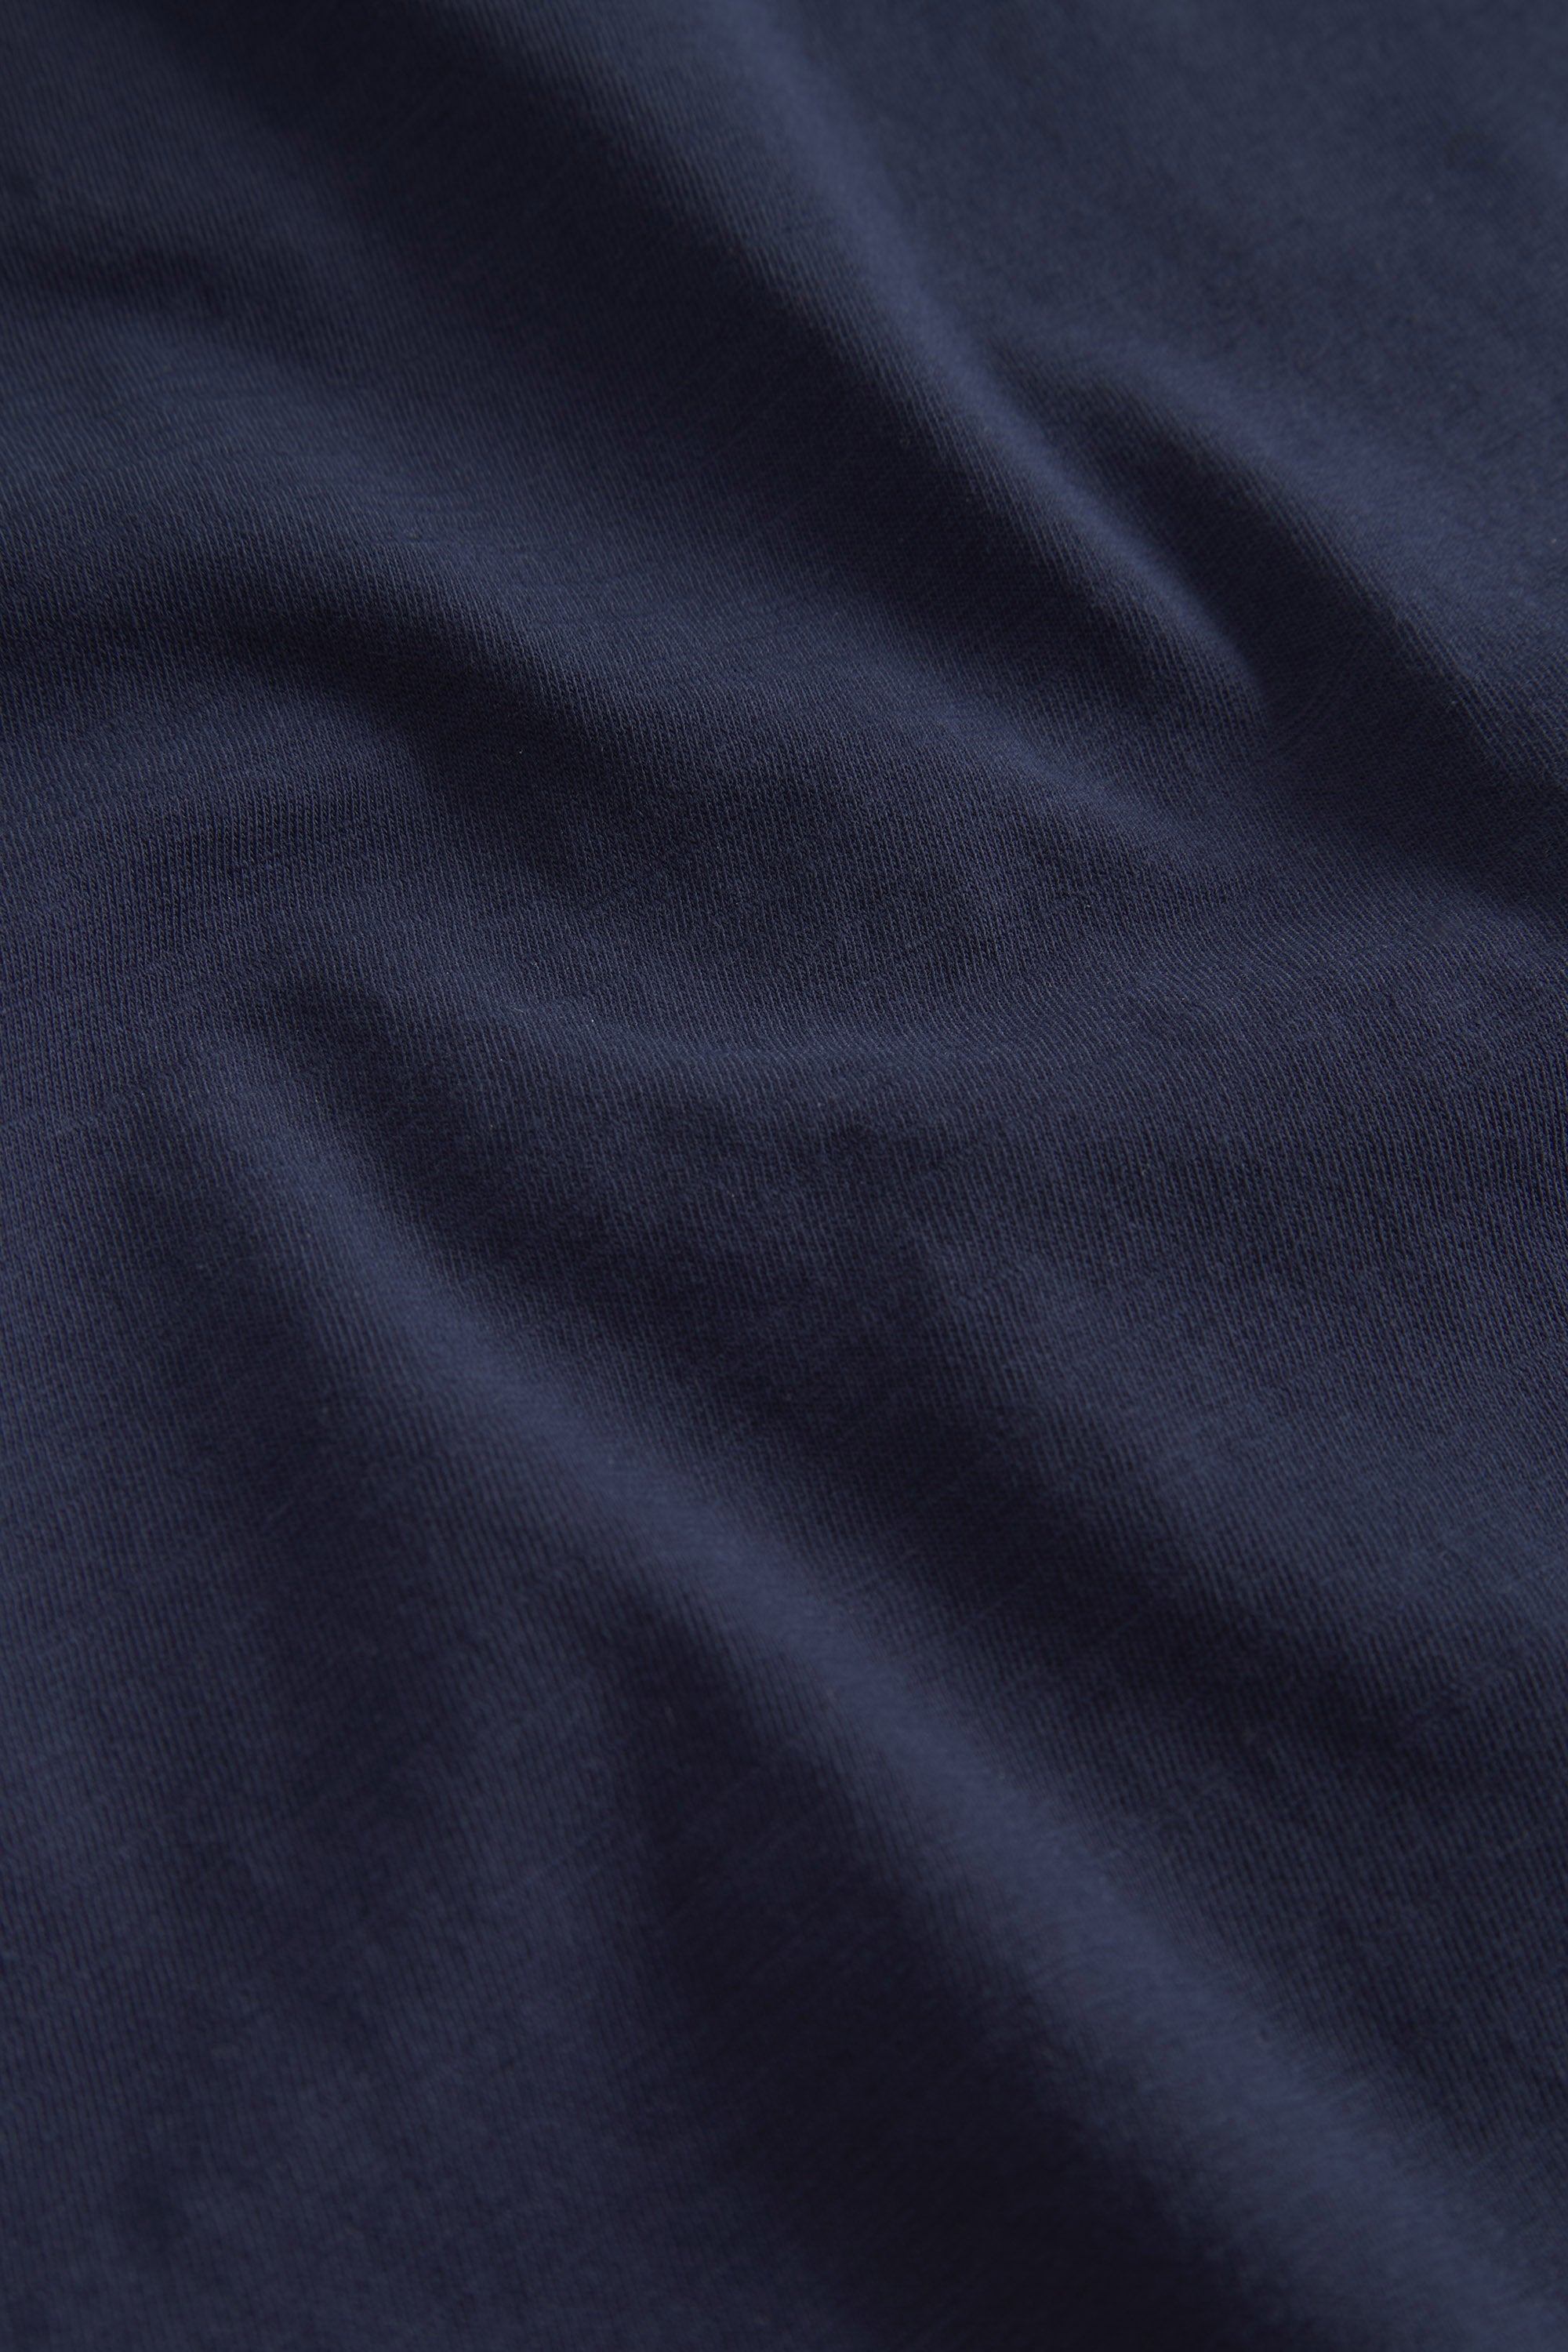 Herren T-Shirt, navy, 100% Baumwolle von Colours & Sons